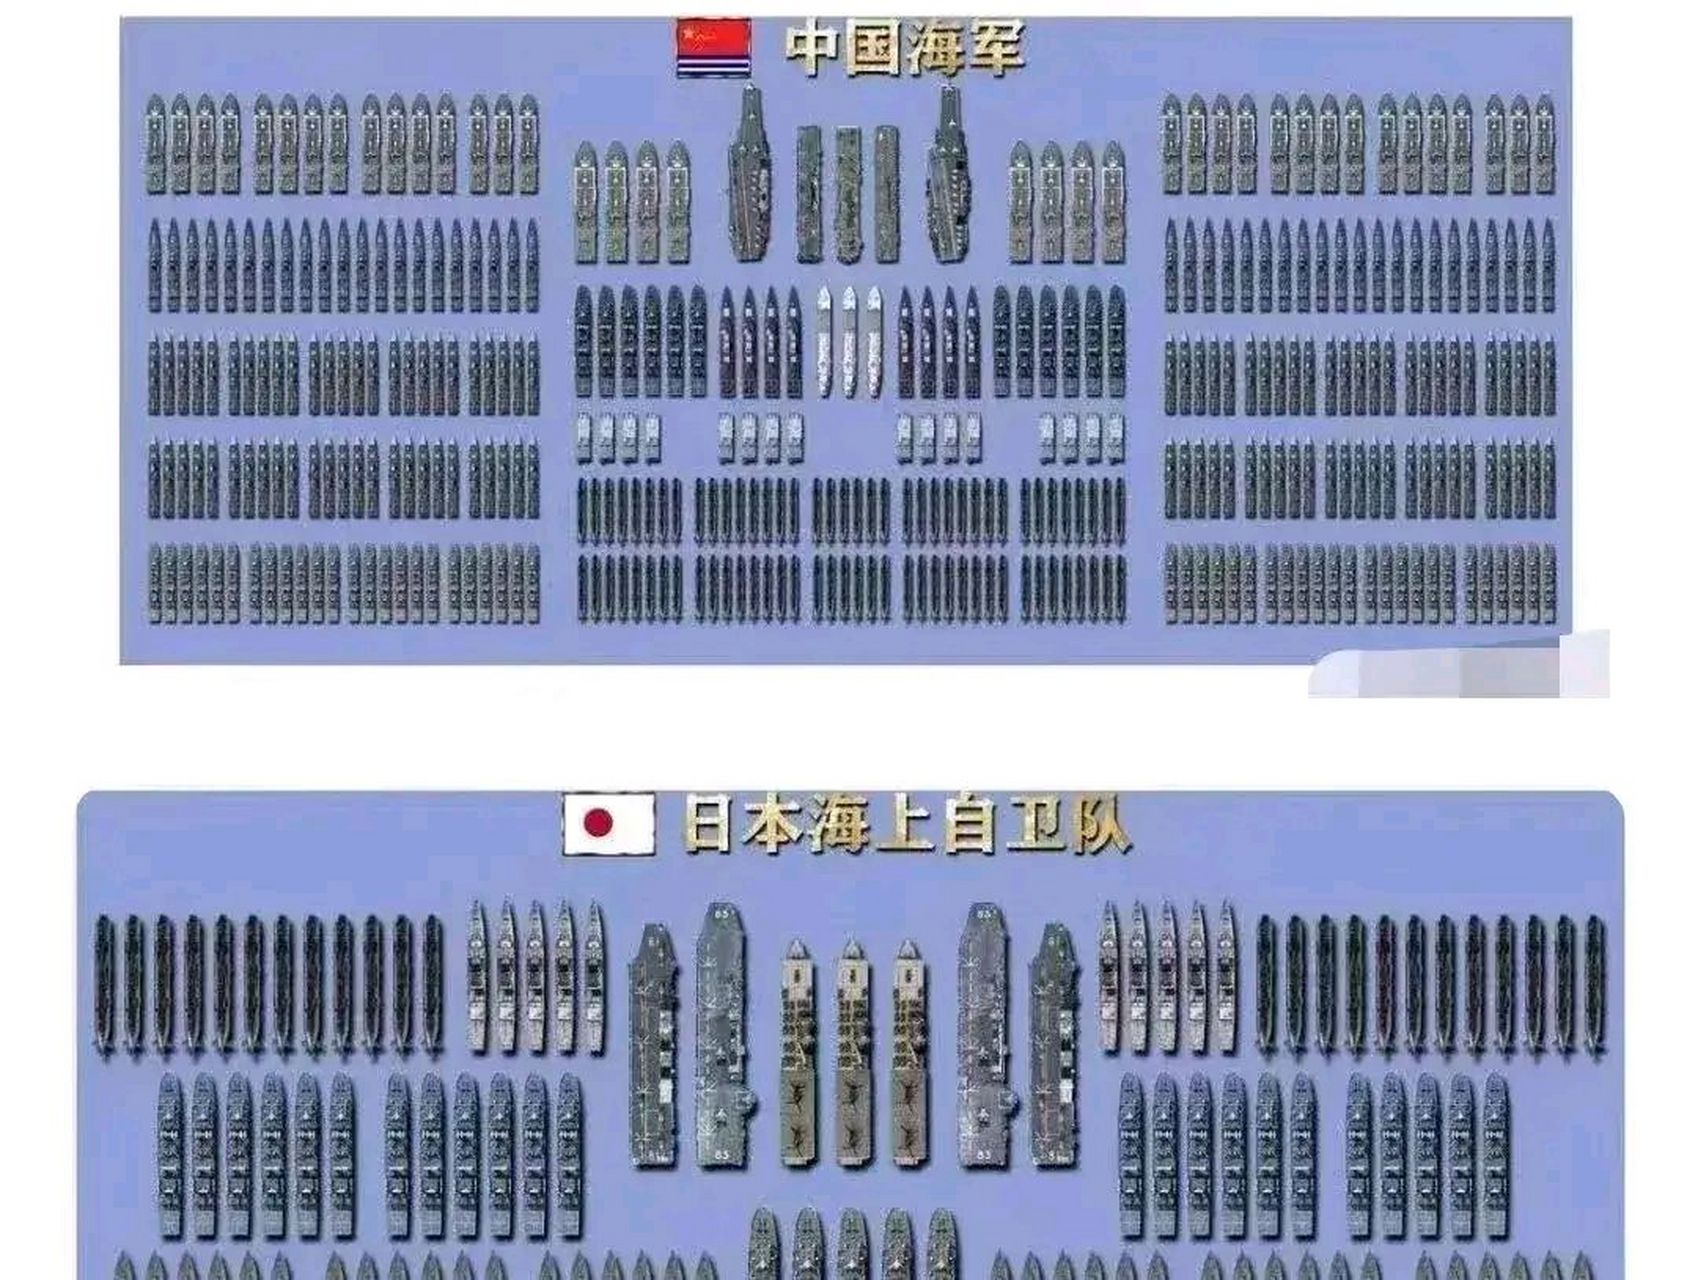 中日海军舰艇实力对比,中国海军凭借其强大的数量和庞大的兵力确实